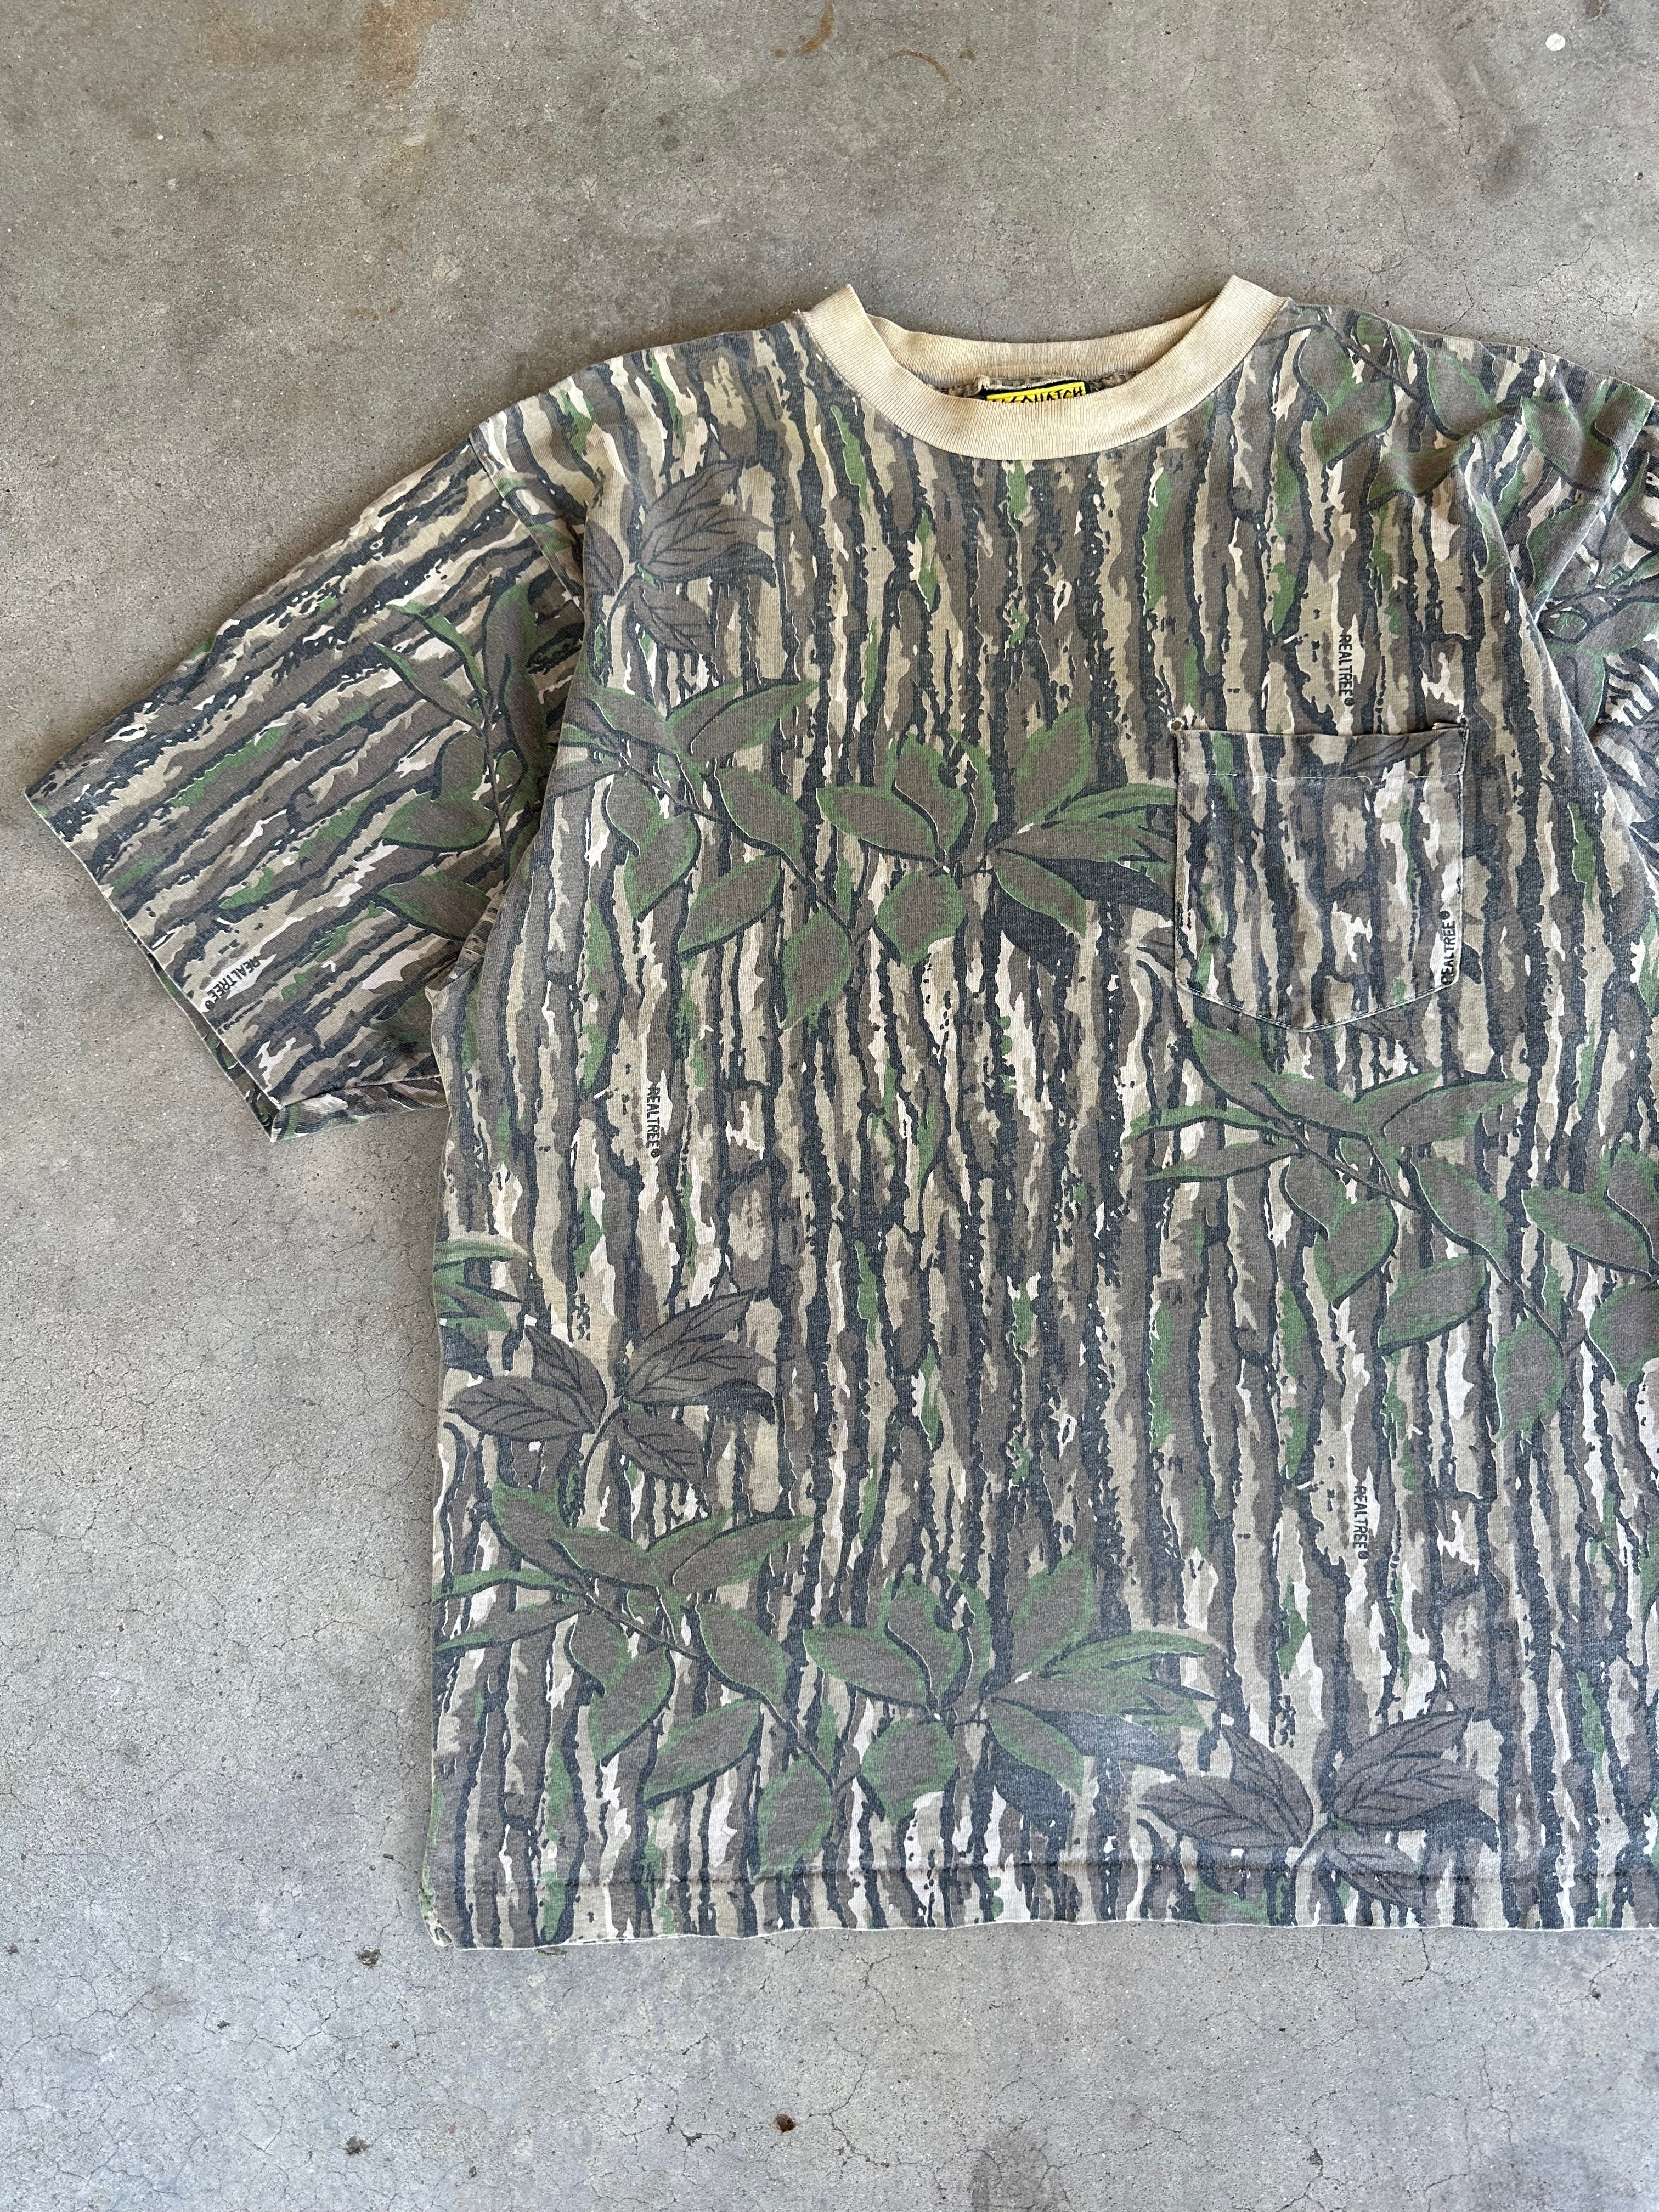 1990s Distressed Realtree Pocket T-Shirt (L/XL)